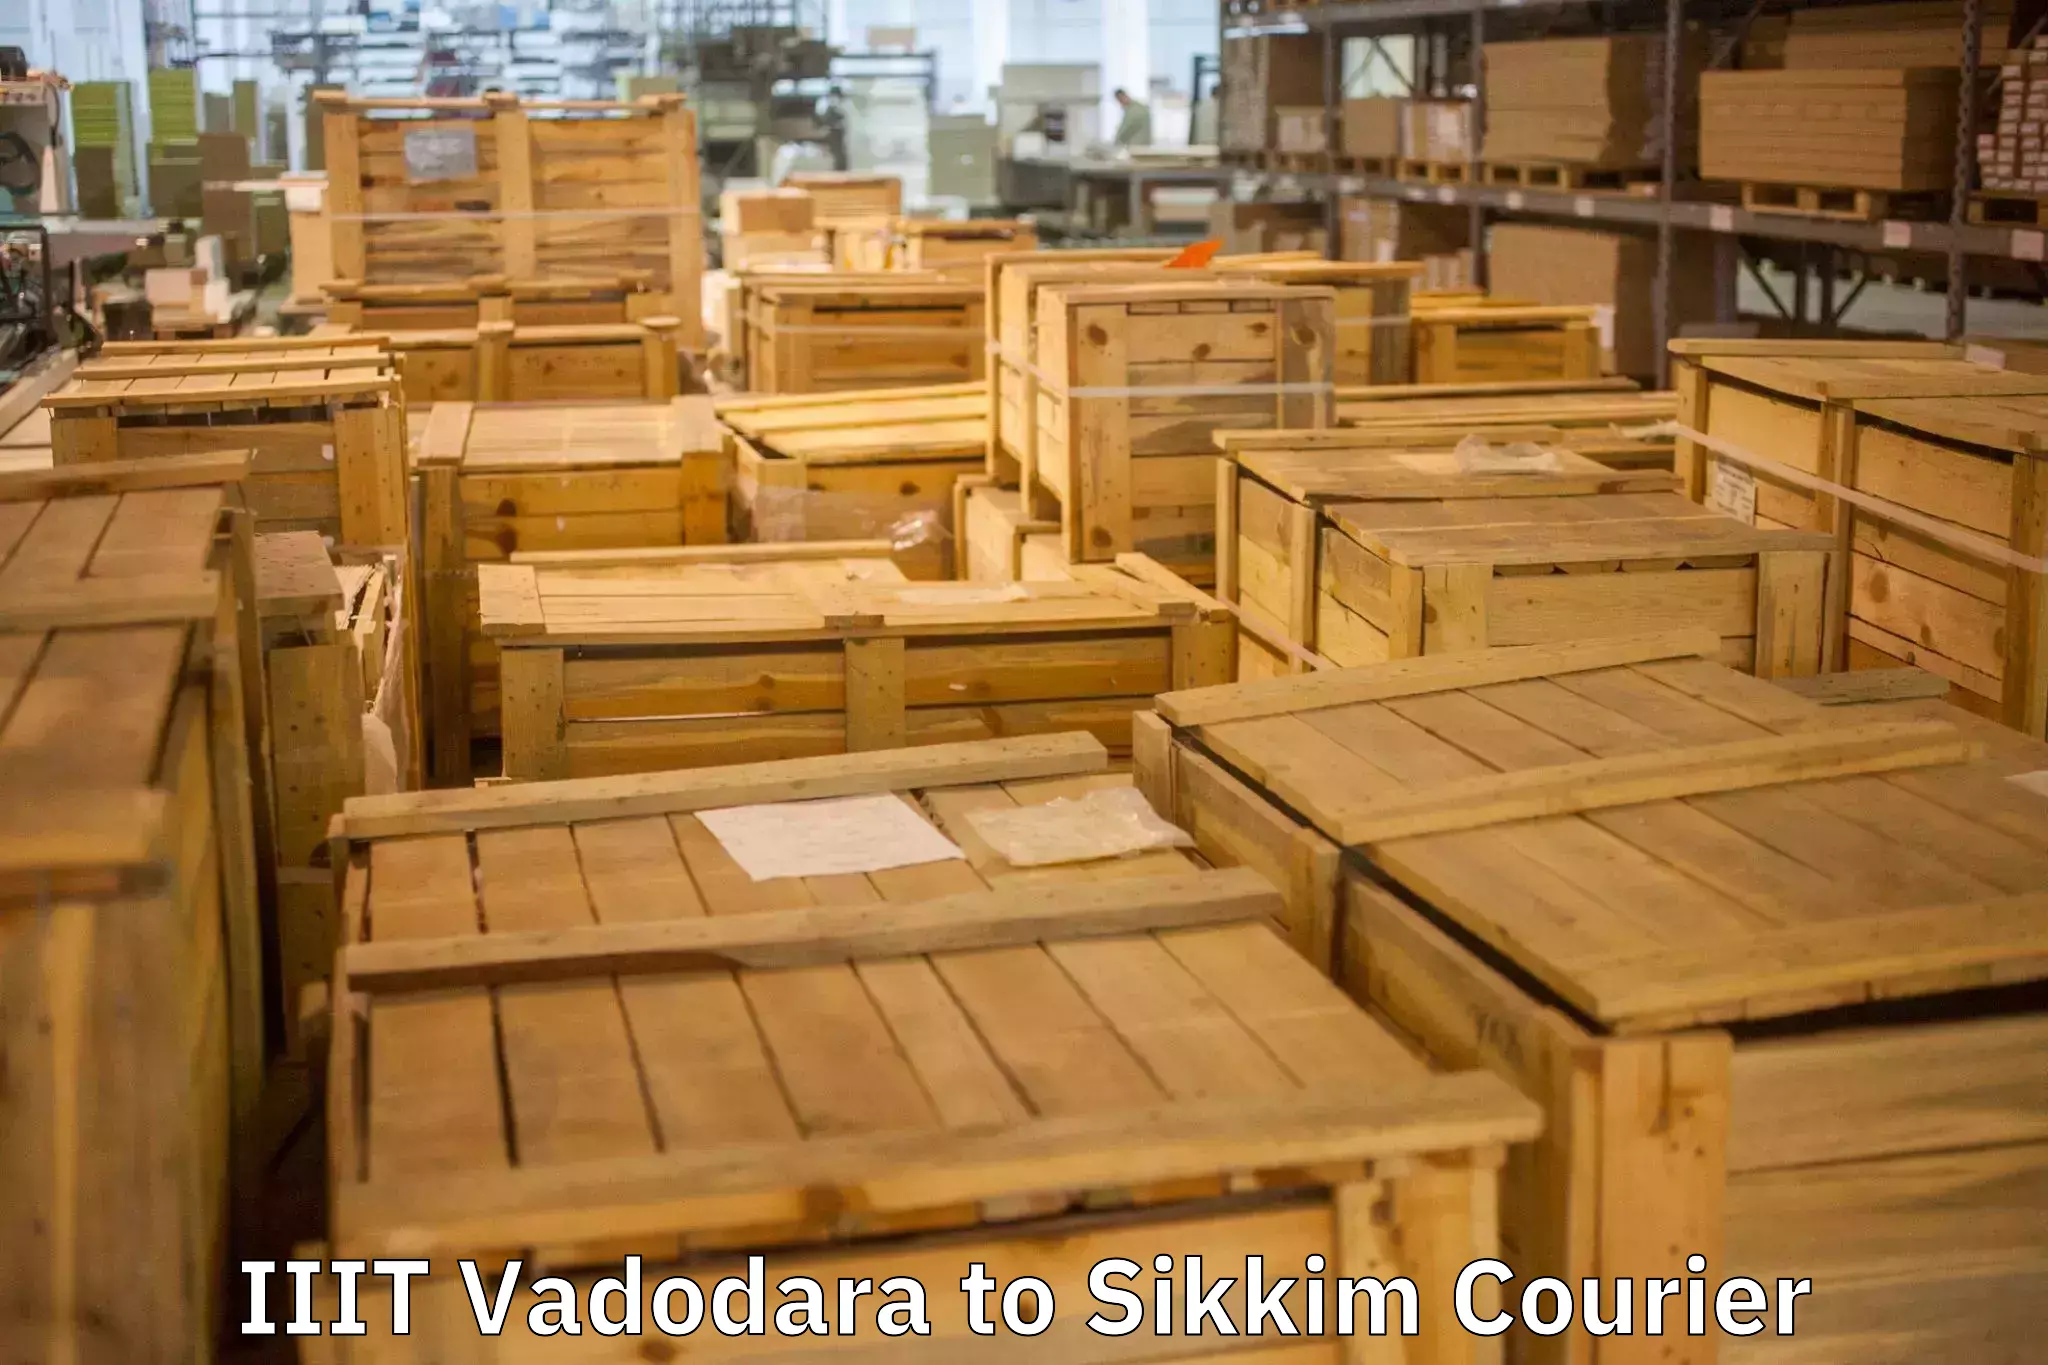 Full-service relocation in IIIT Vadodara to Sikkim